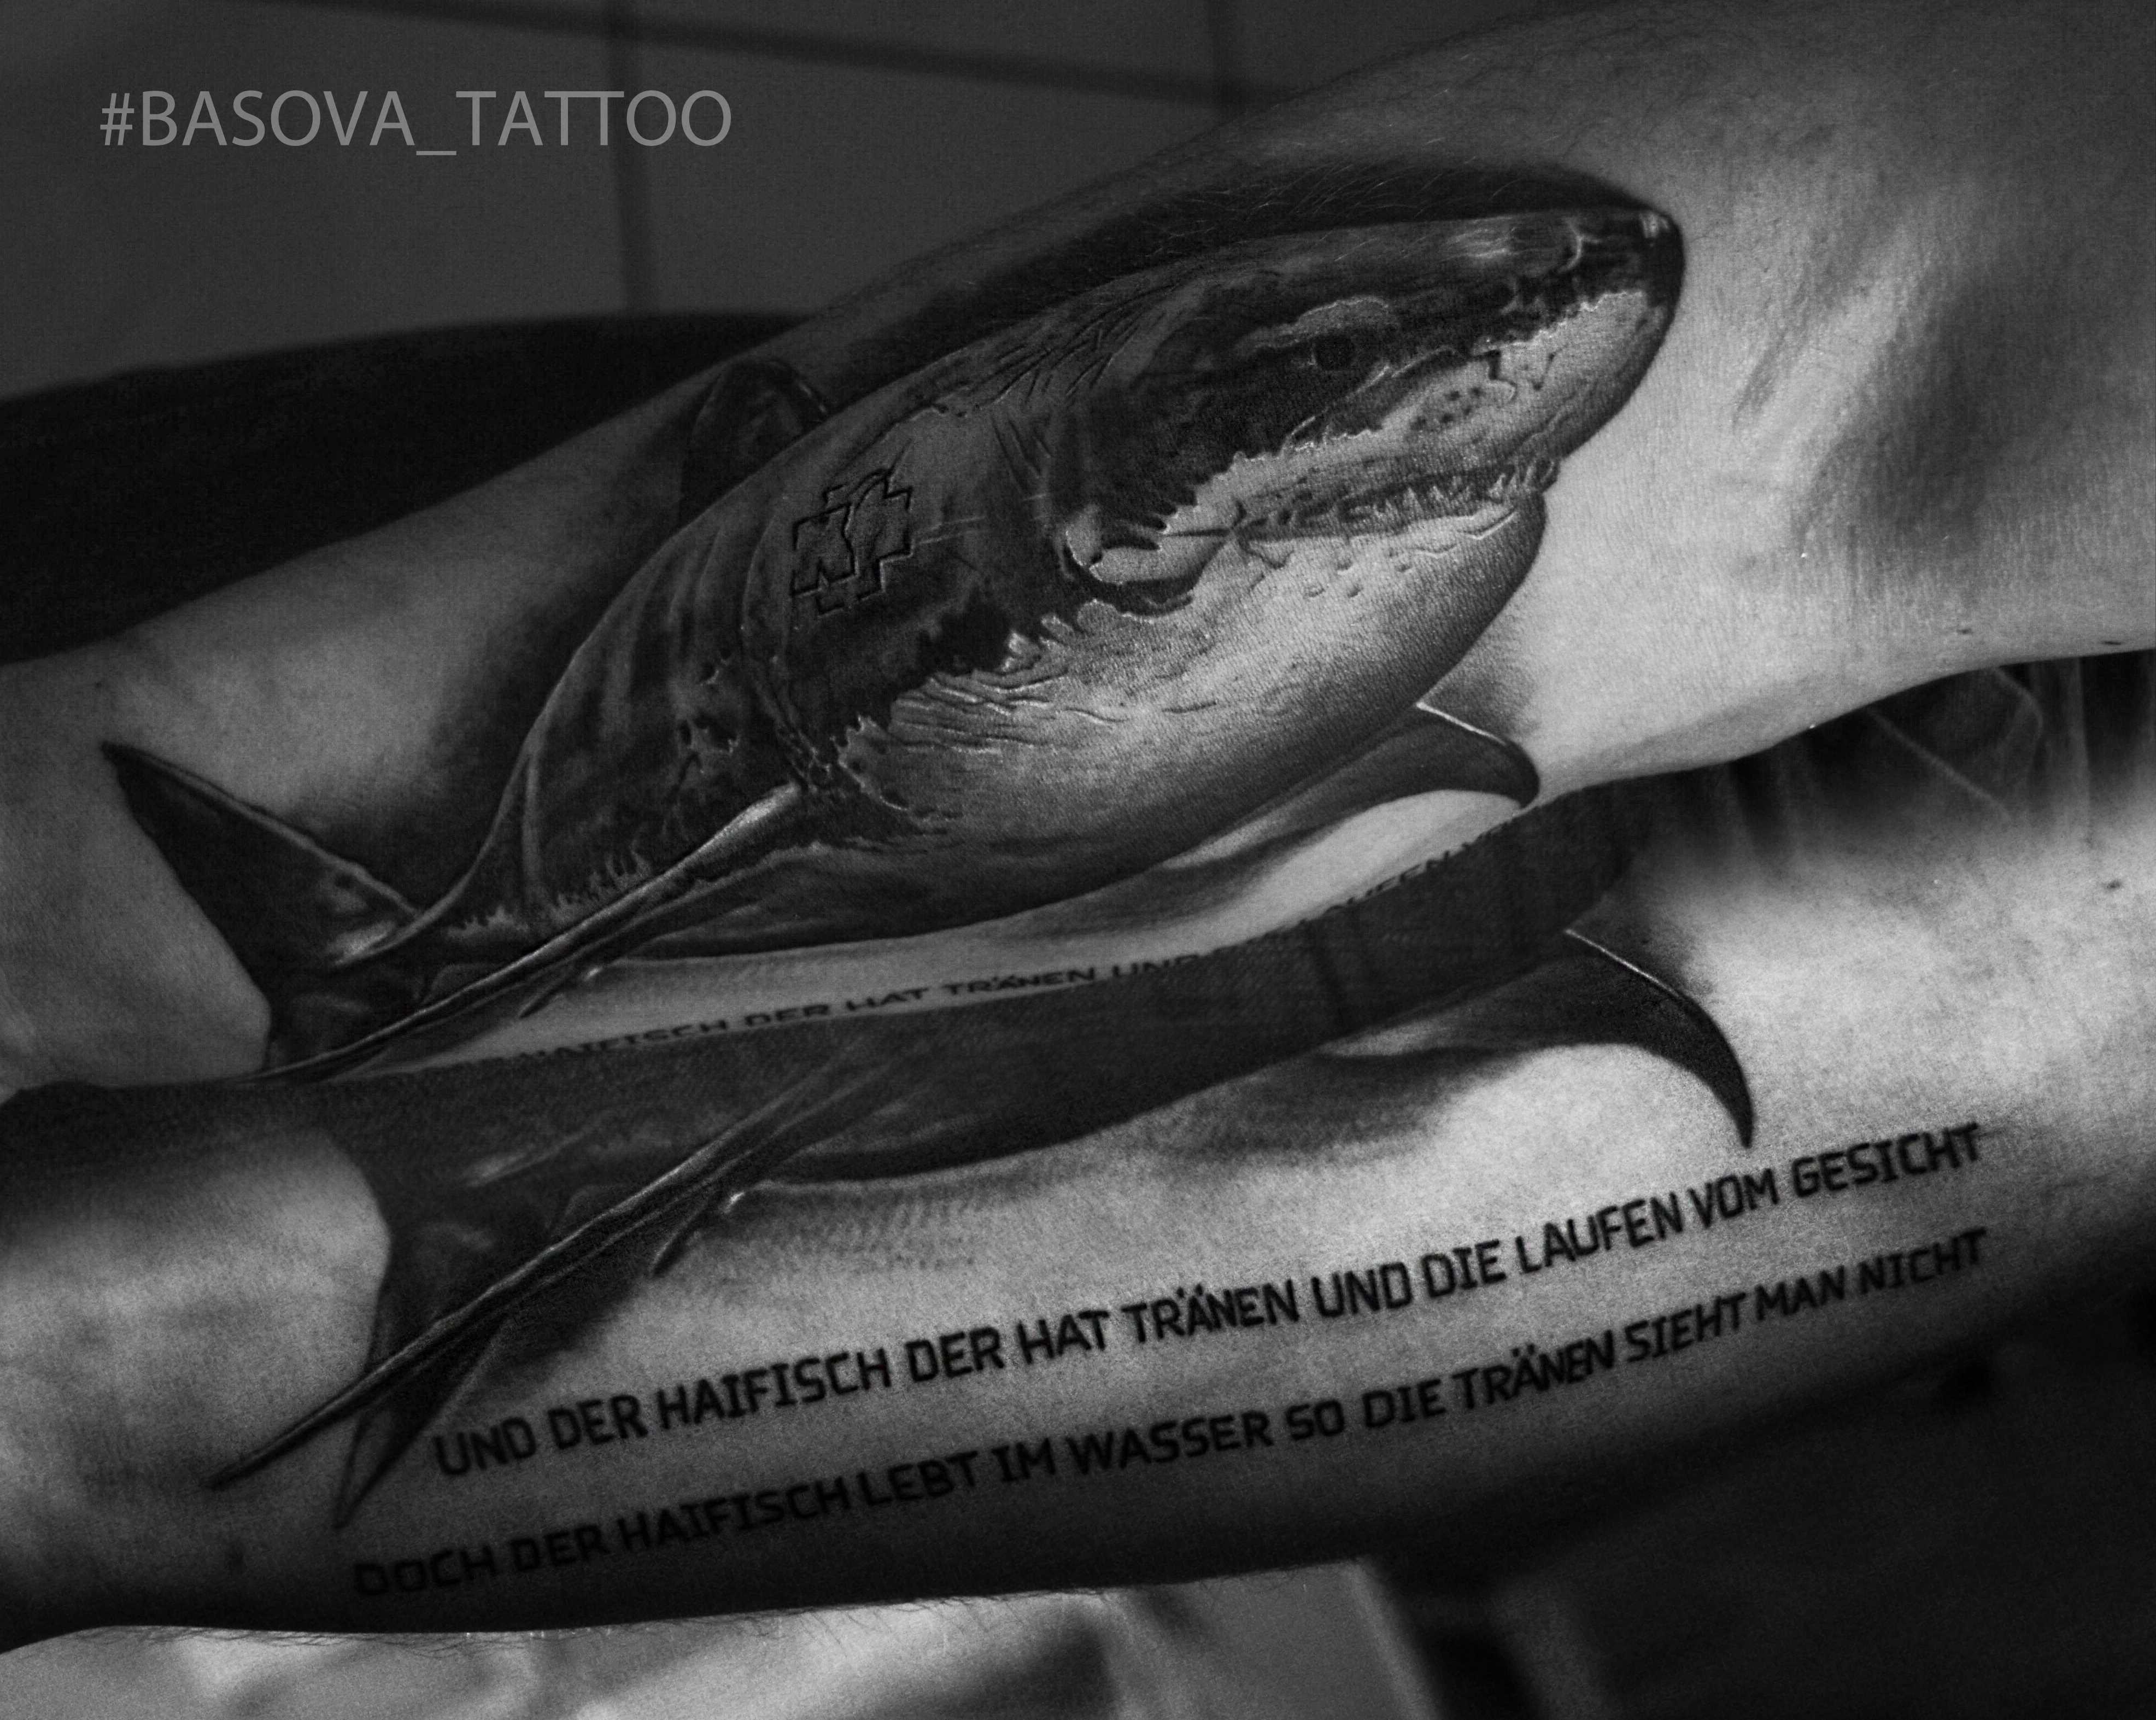 Tatuagem no antebraço cara de tubarão e o texto de uma canção de Ramstein